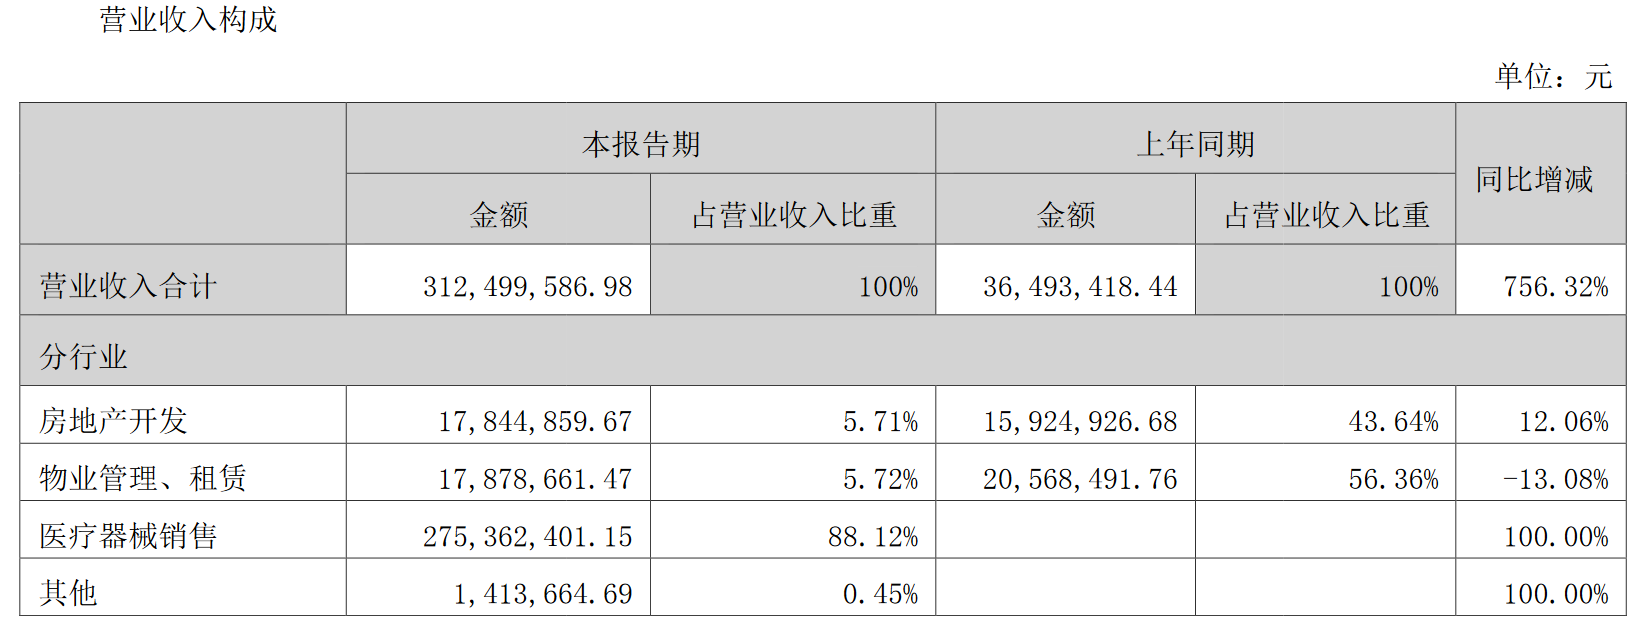 转身未见光明丨荣丰控股拟出售威宇医疗33.74%股权 回归房地产开发主业